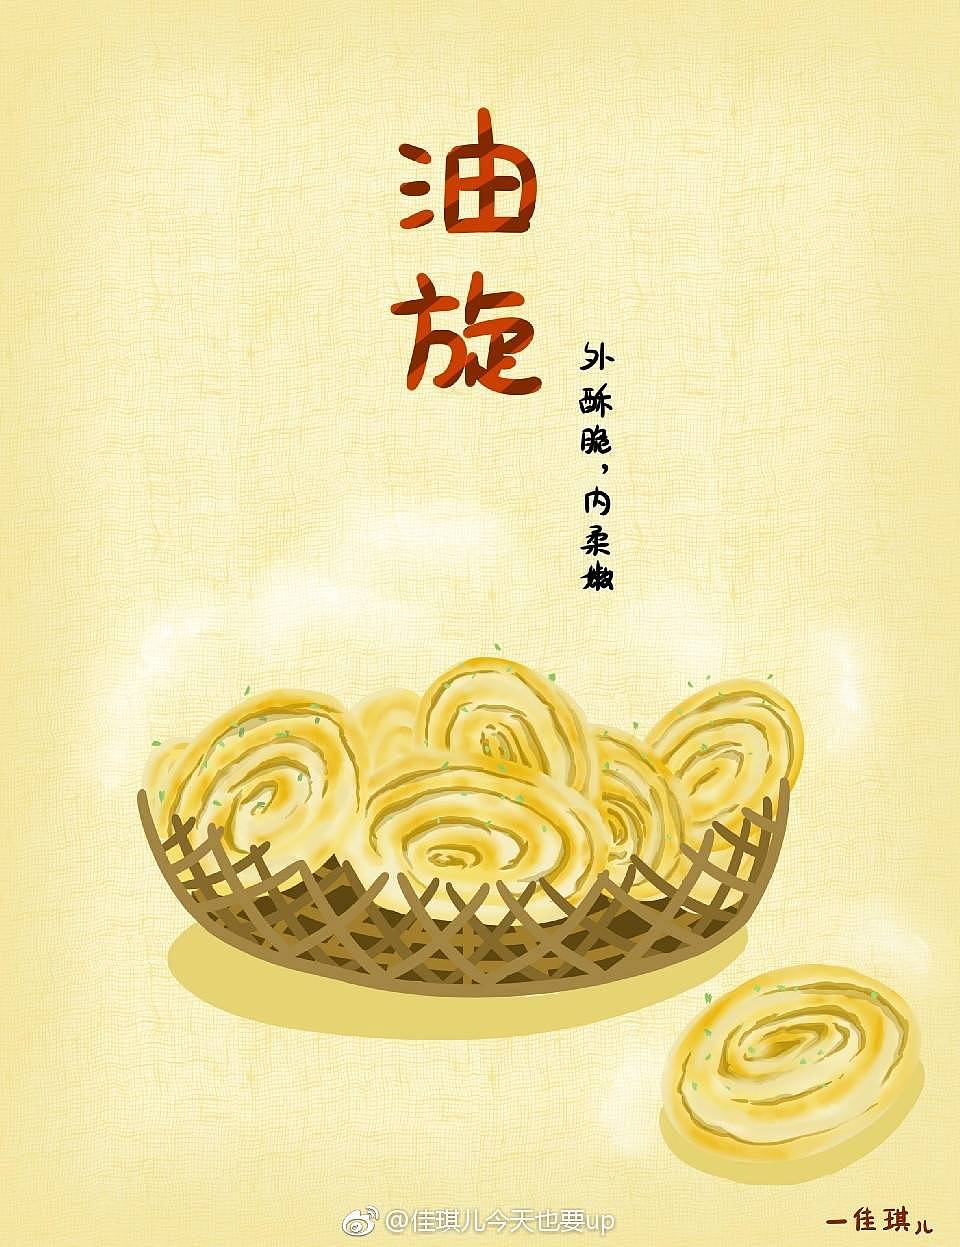 油旋,是山东济南汉族传统名吃,外皮酥脆,内瓤柔嫩,葱香透鼻,因其形似